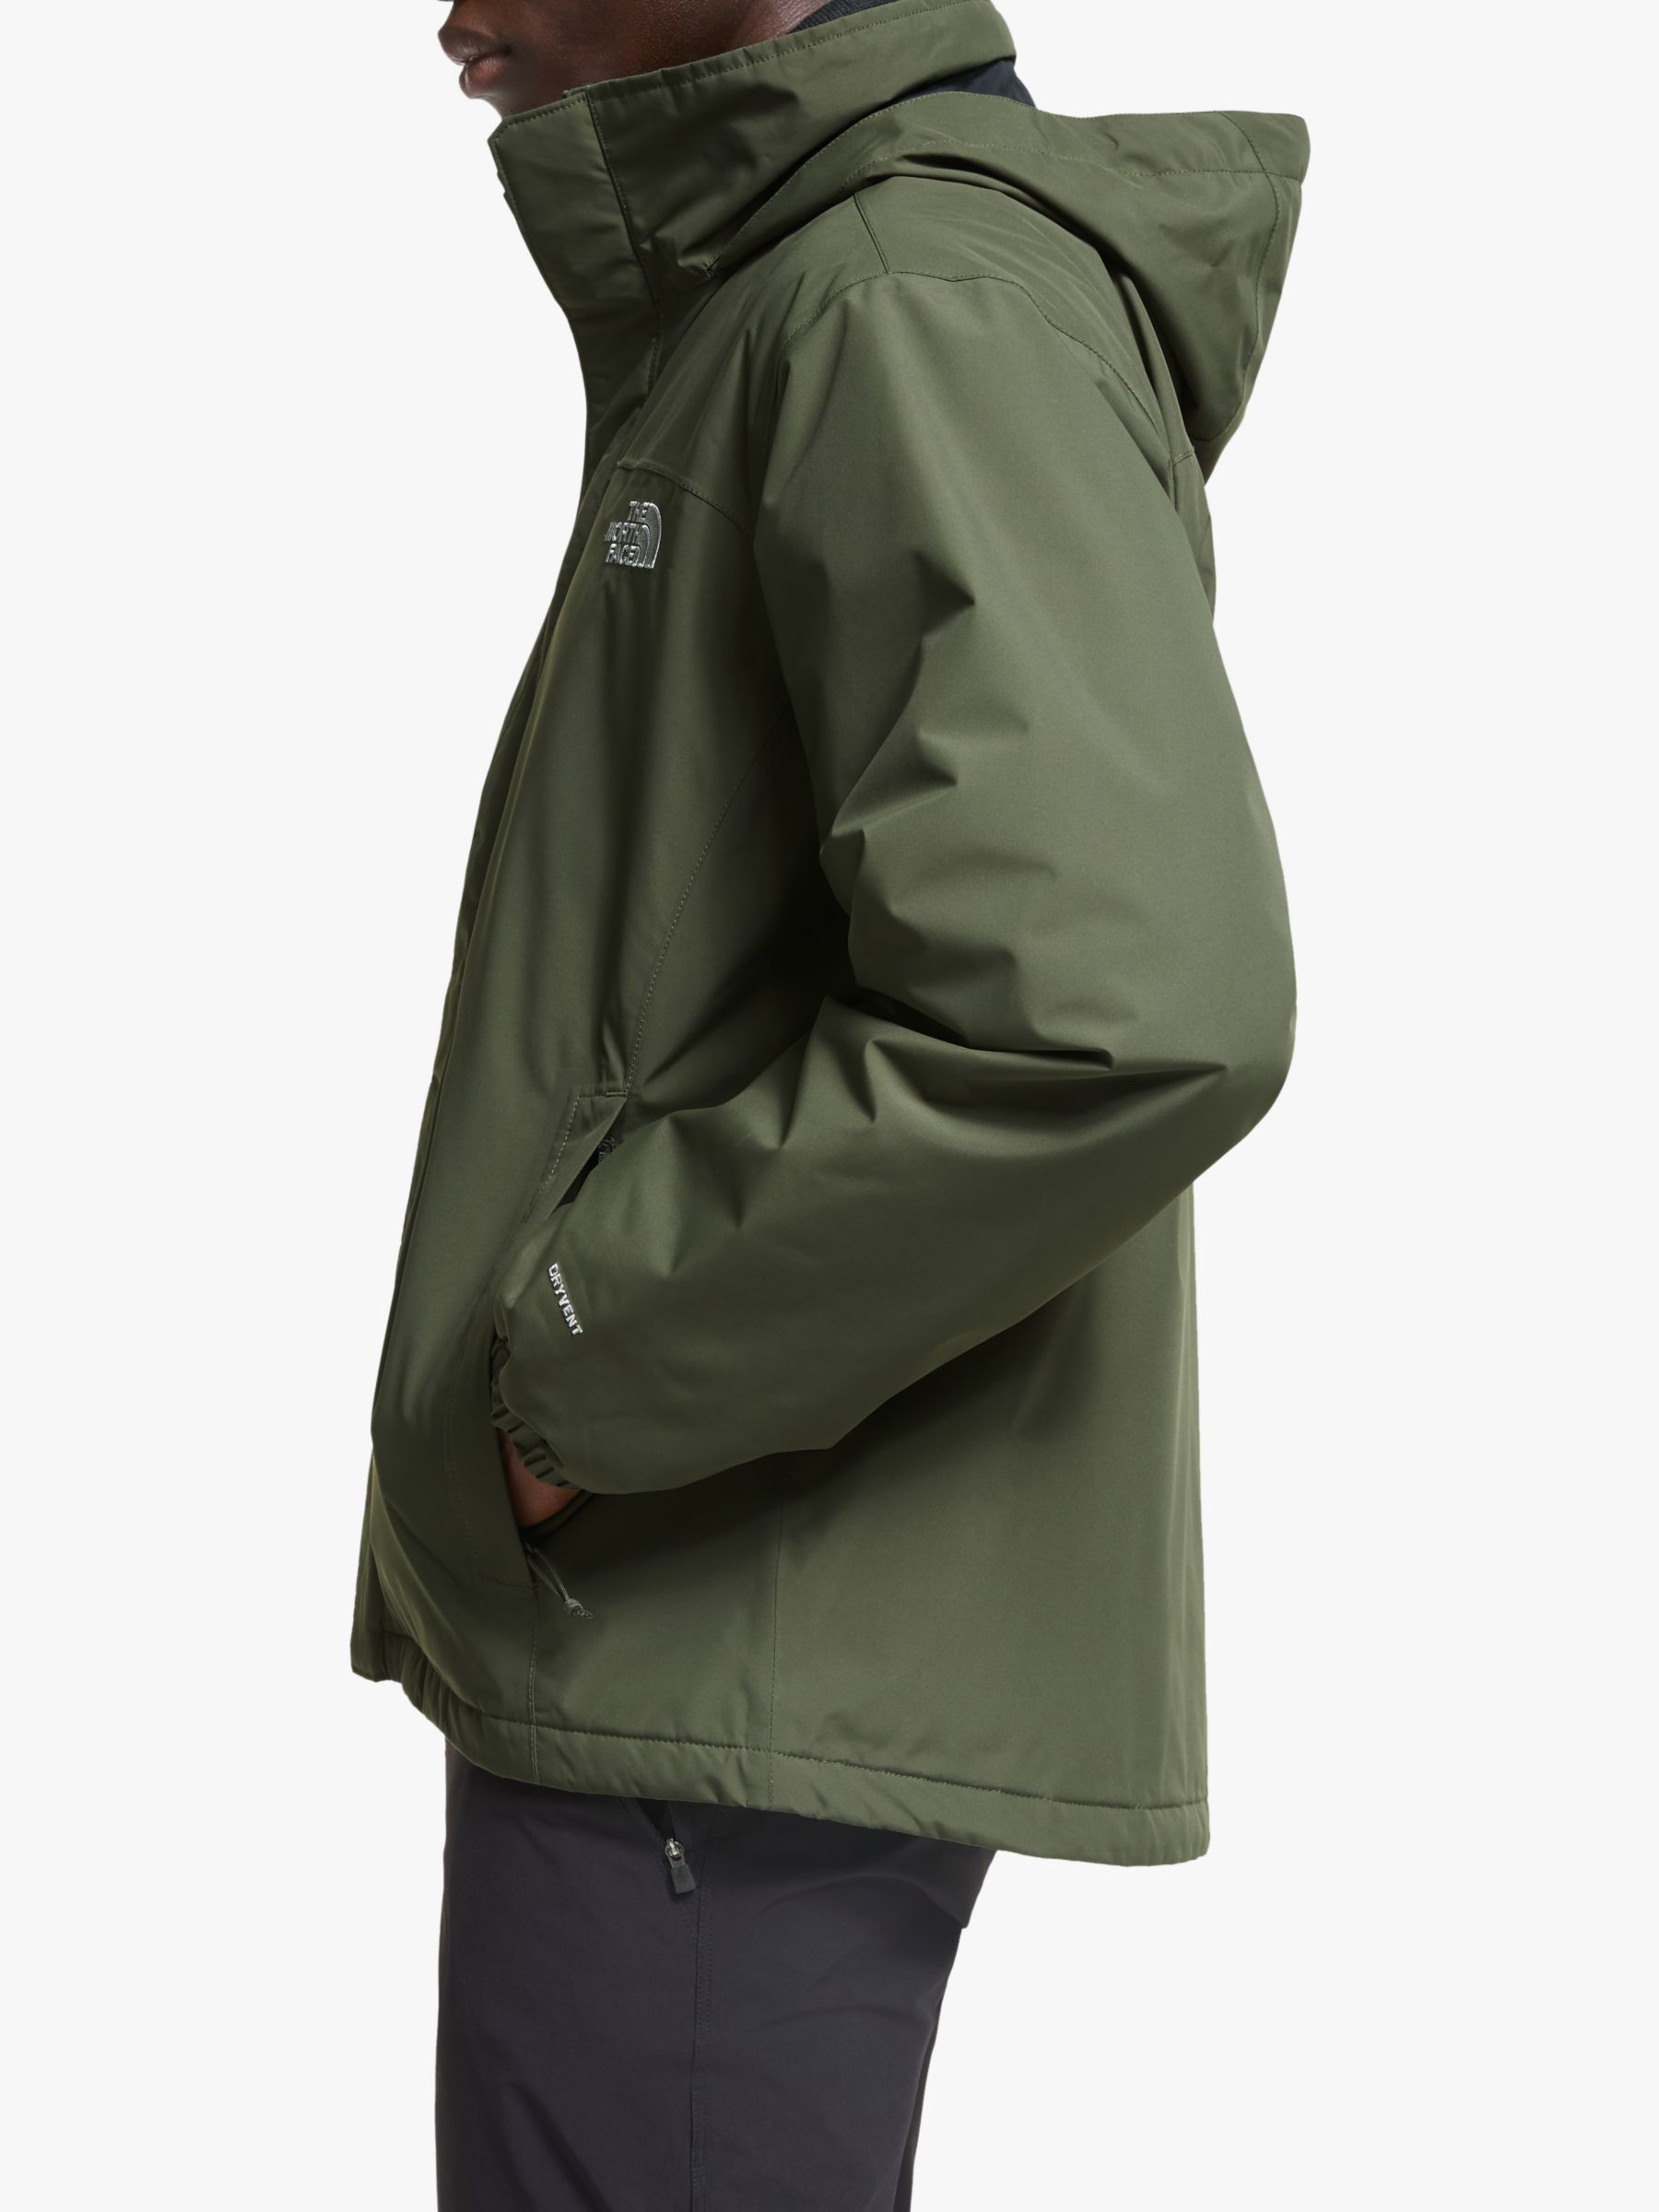 khaki green north face jacket mens